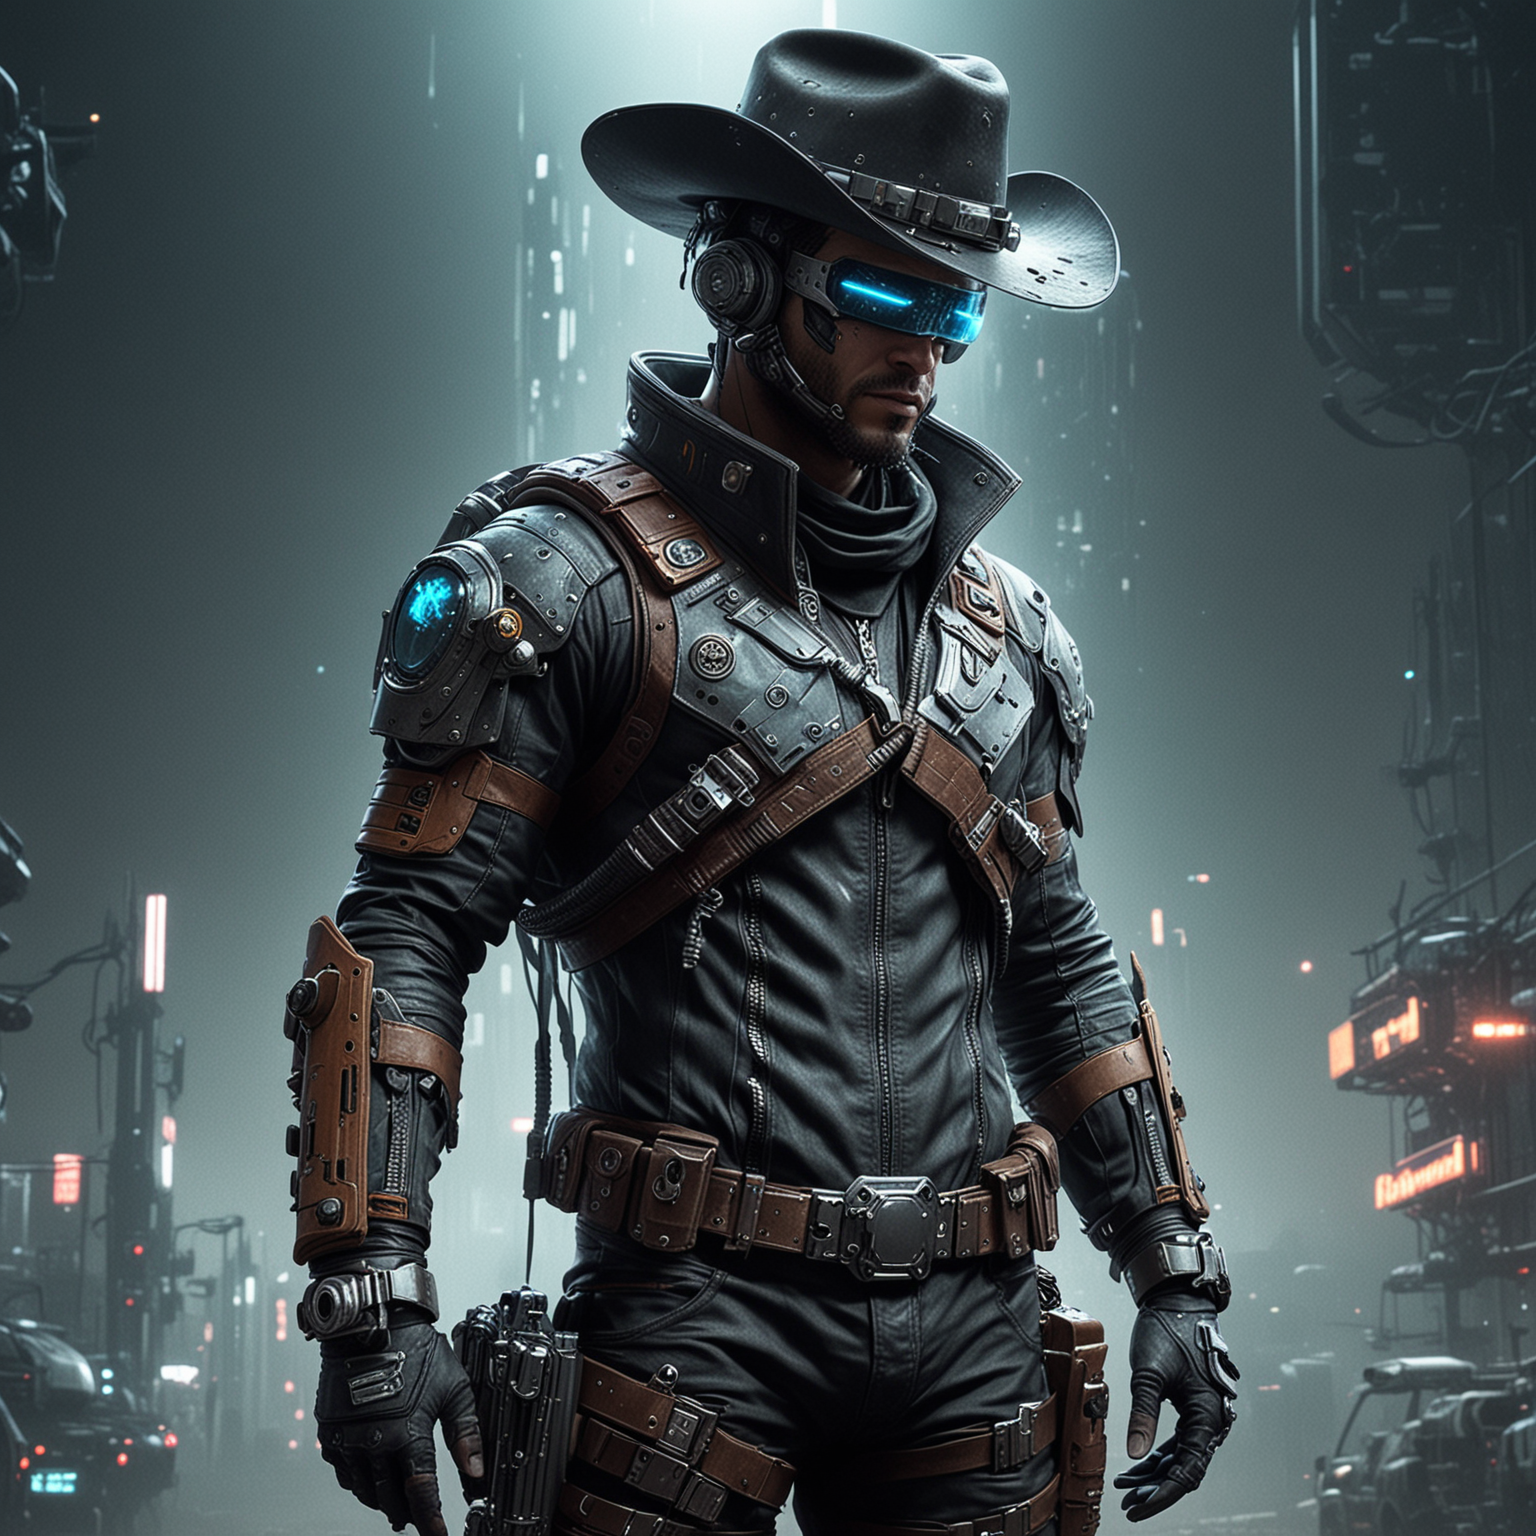 Futuristic Cyberpunk Astronaut Cowboy in Neon Cityscape